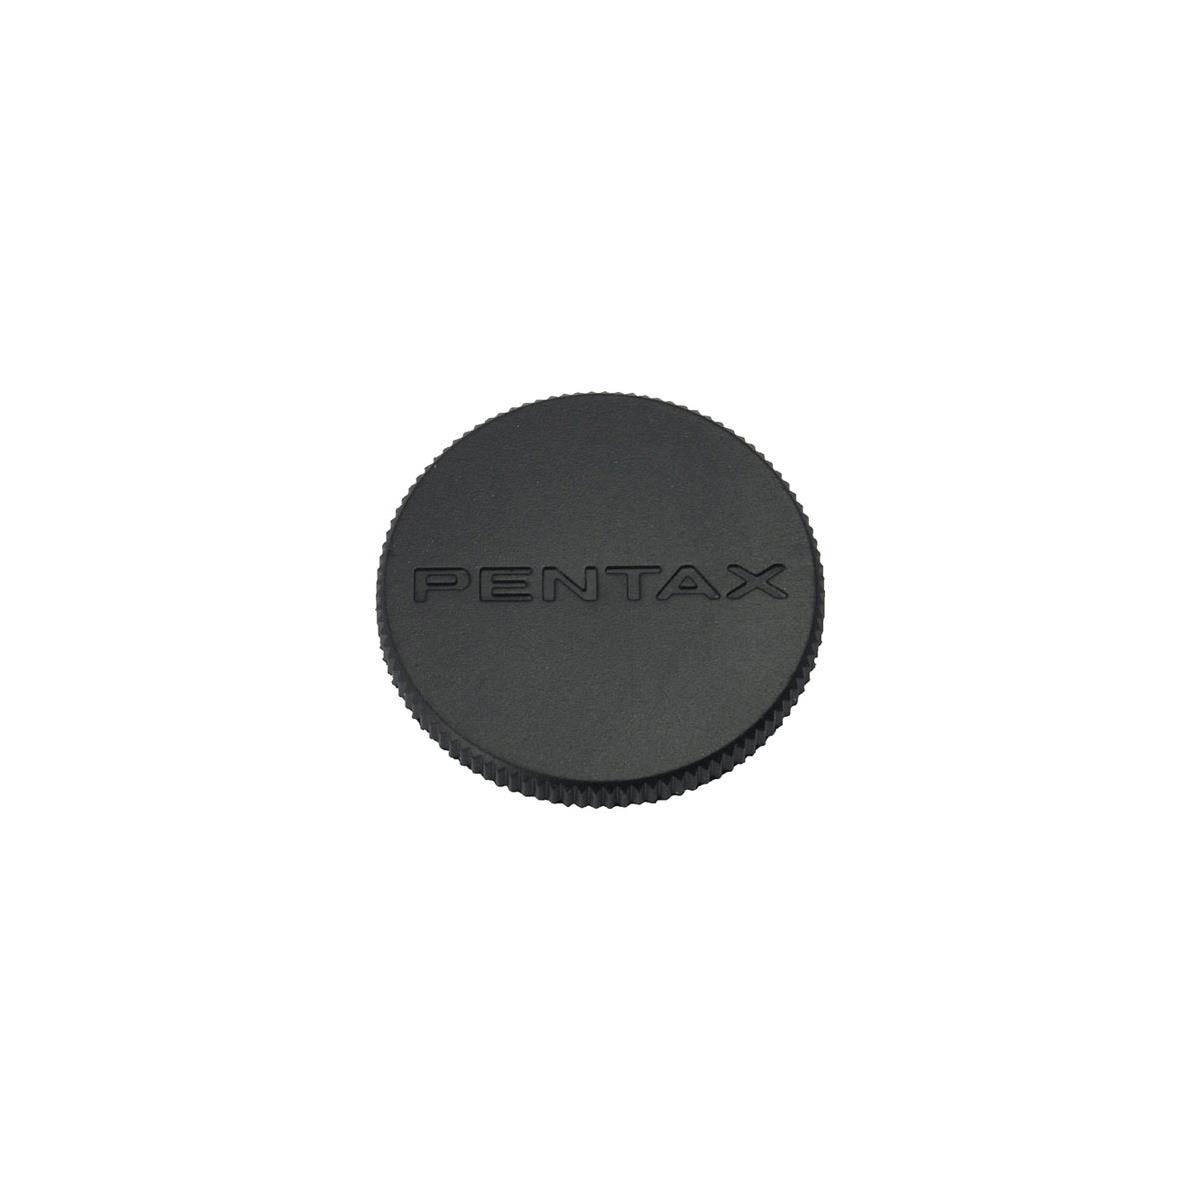 Передняя крышка объектива Pentax O-LC27 27 мм для объектива -DA 40 мм f/2.8 XS #31495